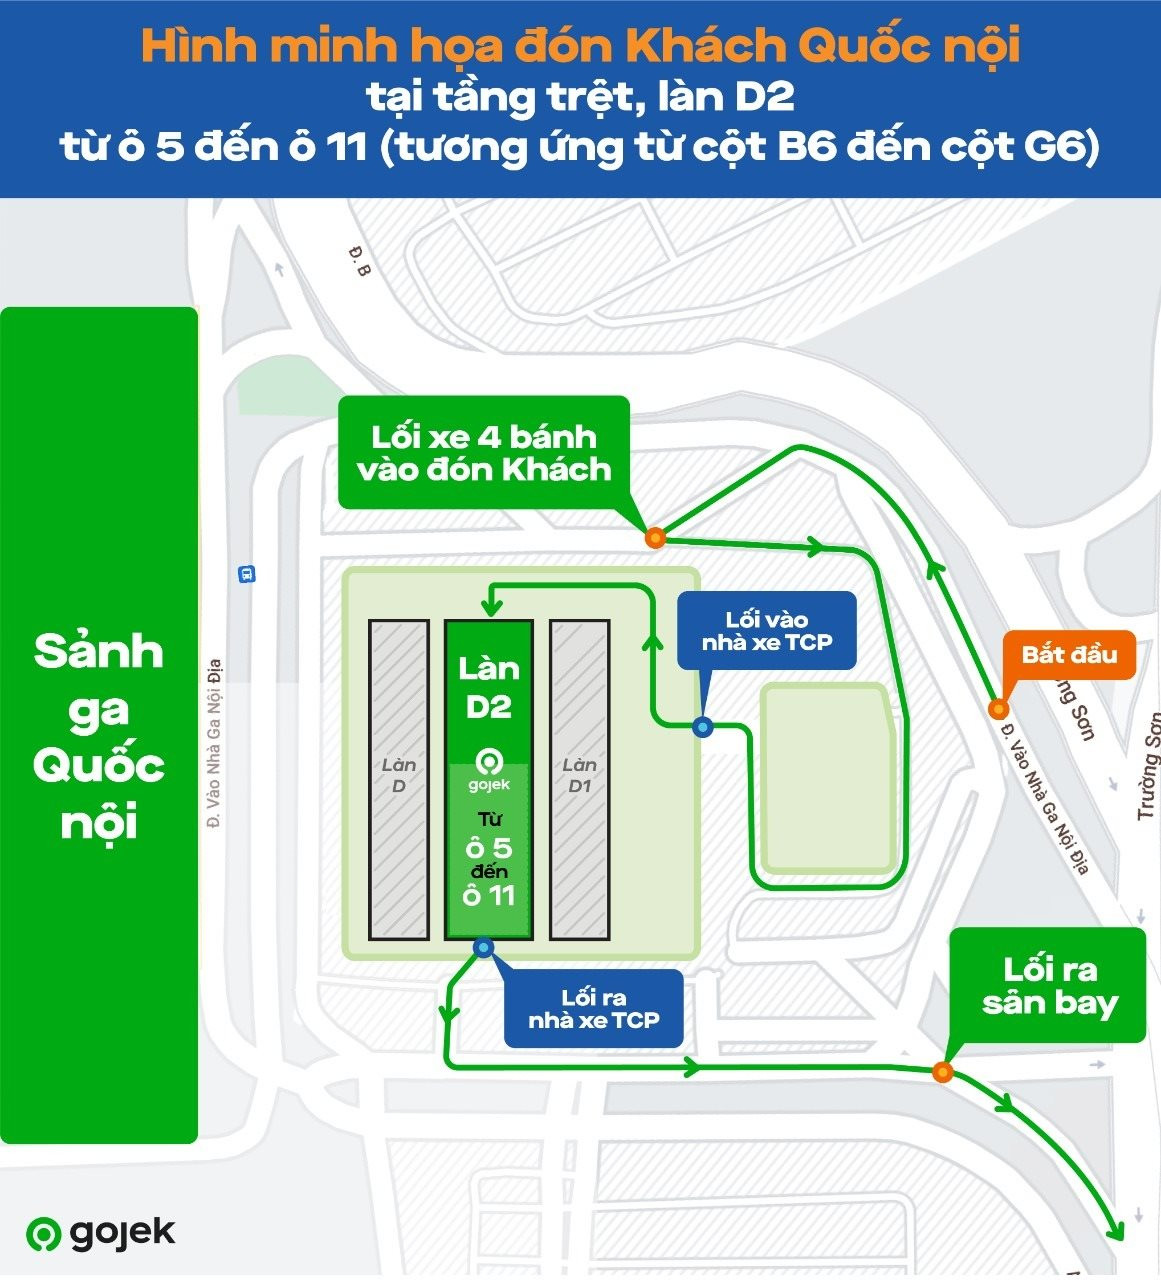 Cuộc chiến taxi công nghệ tại sân bay thêm nhộn nhịp: Gojek chính thức triển khai GoCar tại Tân Sơn Nhất - Ảnh 2.